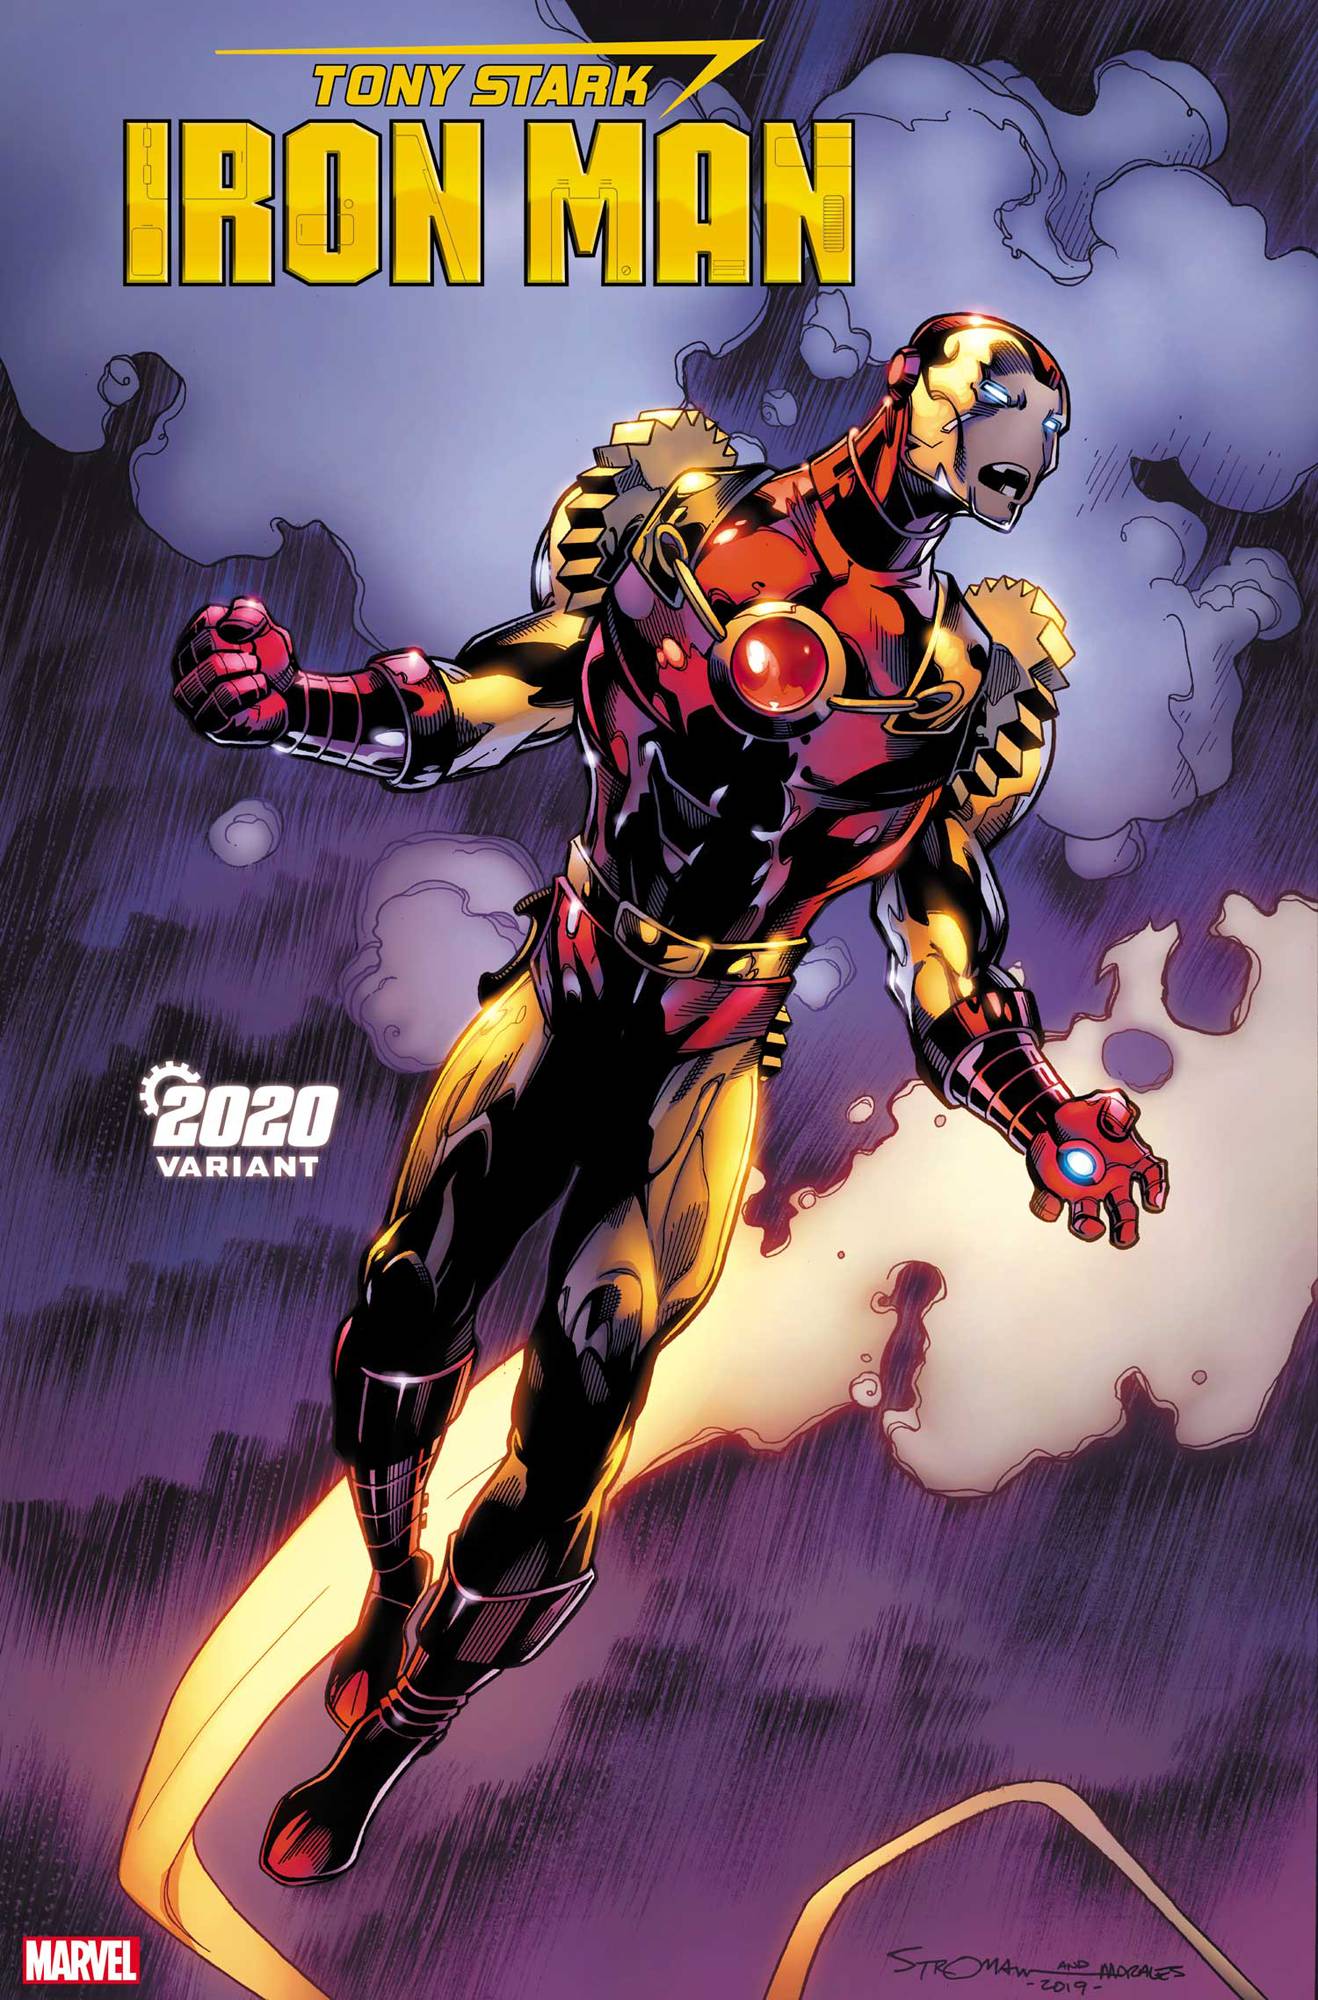 Tony Stark Iron Man #19 Stroman 2020 Variant (2018)